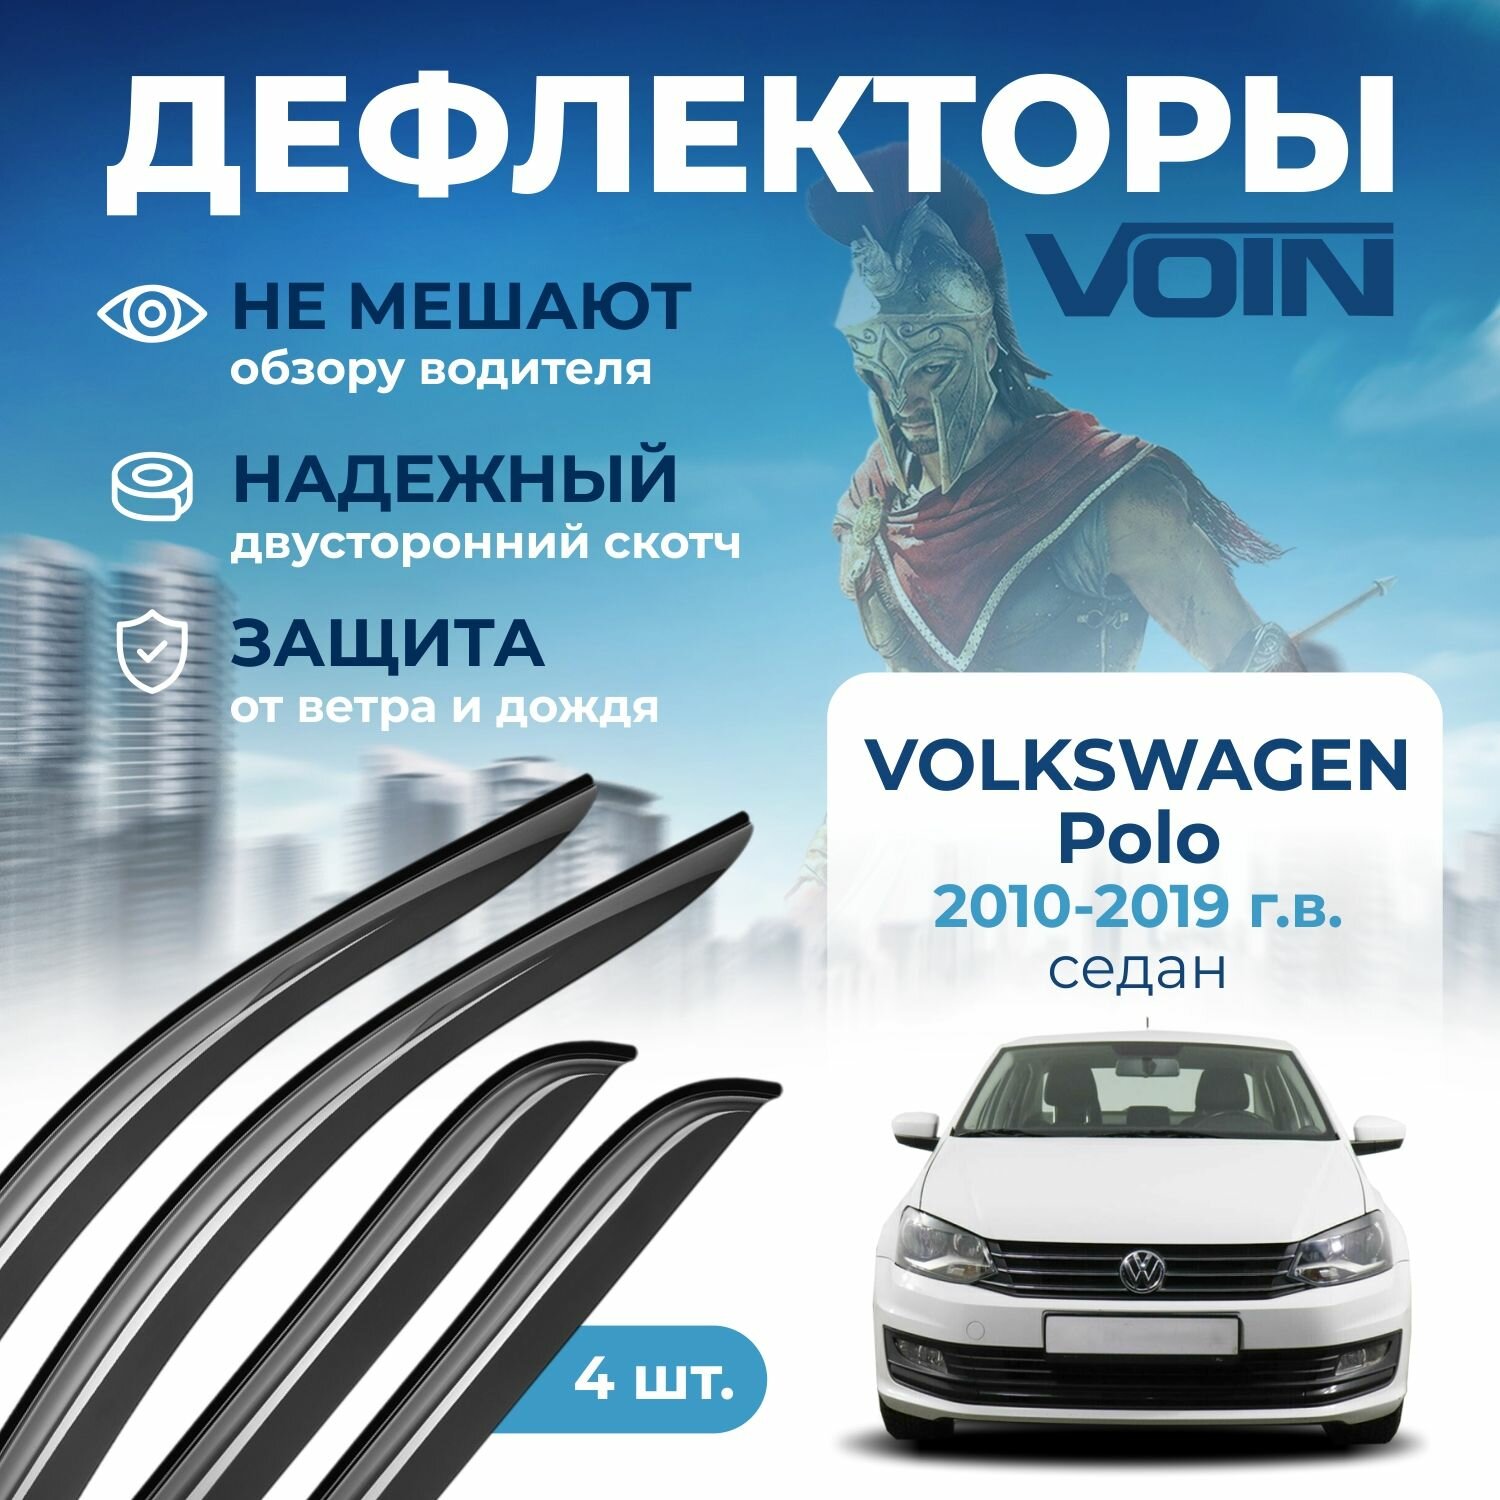 Дефлекторы окон VOIN на автомобиль Volkswagen Polo 2010-2019 /седан/накладные 4 шт